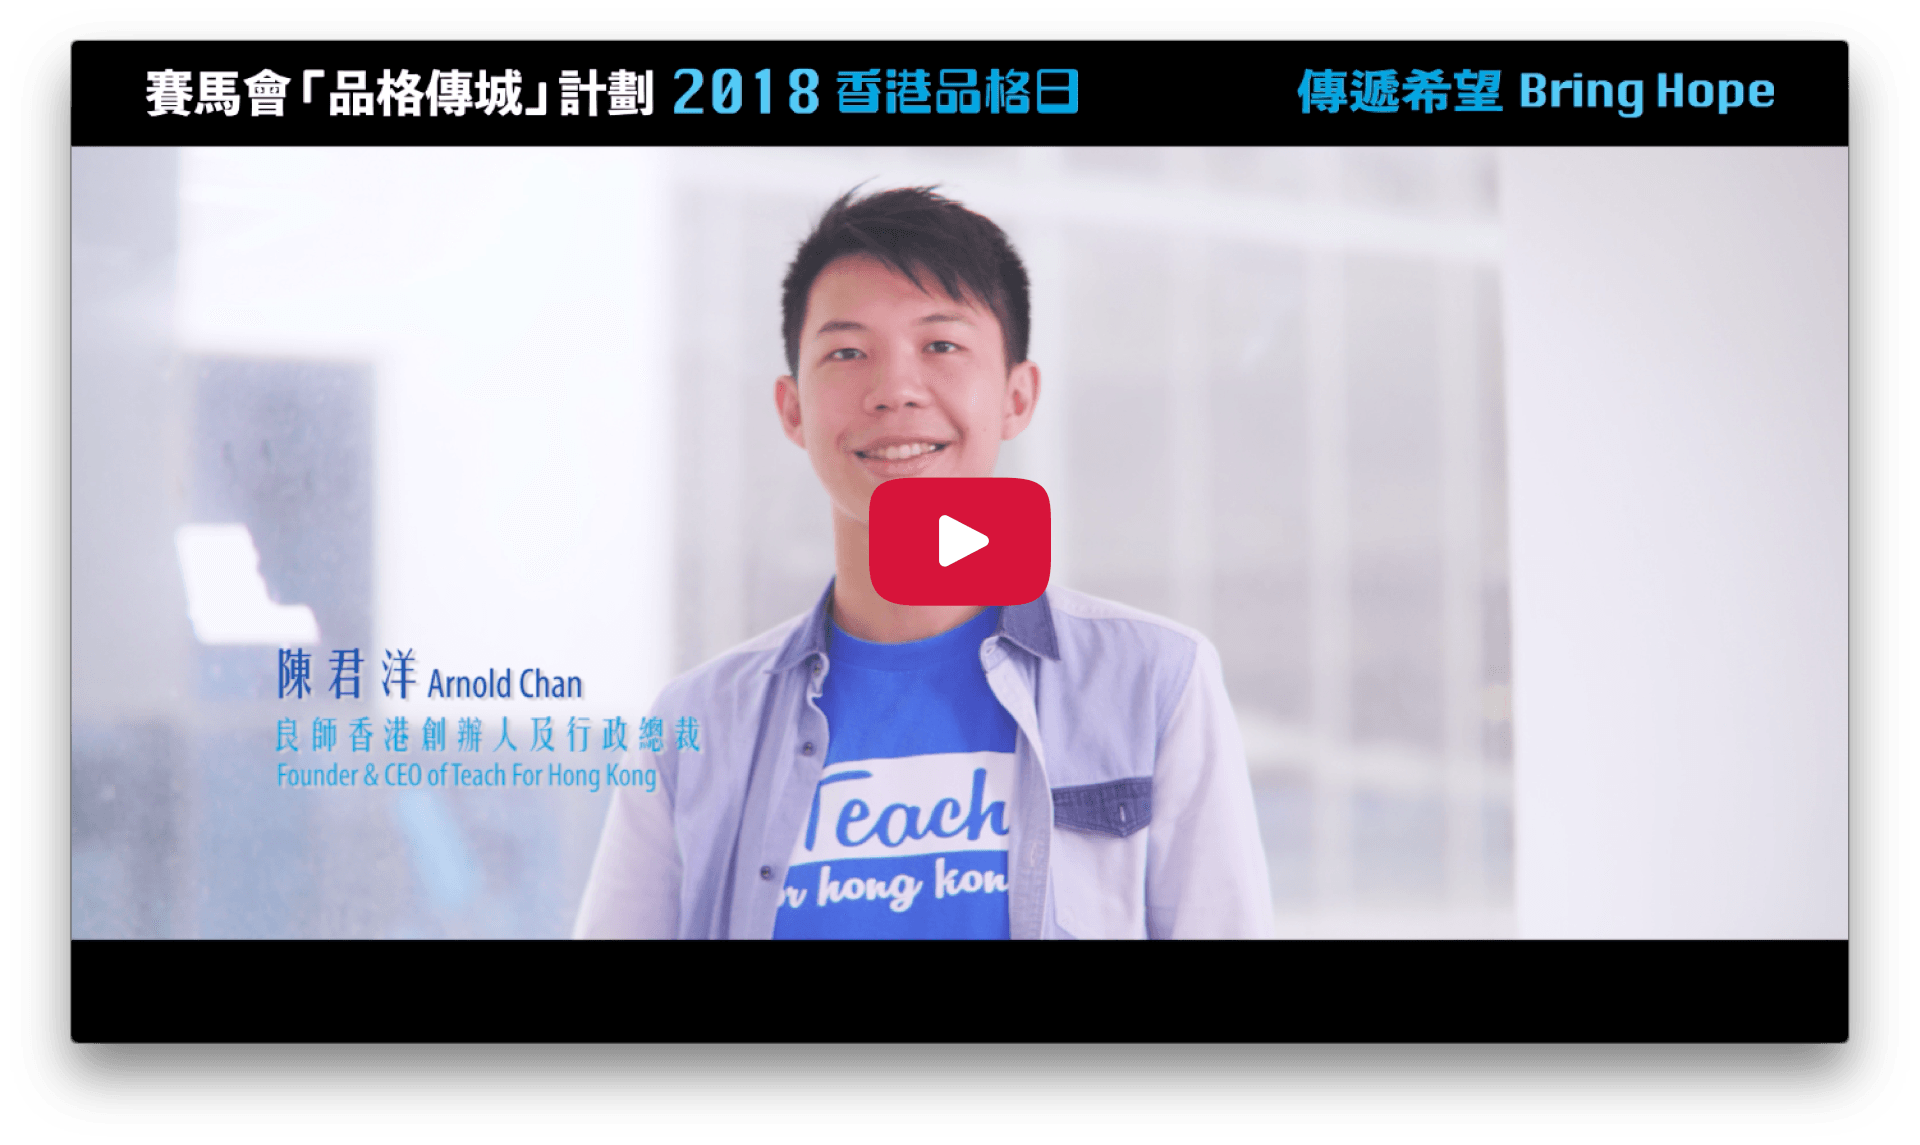 2018 Character Day Hong Kong Ambassadors - Arnold Chan